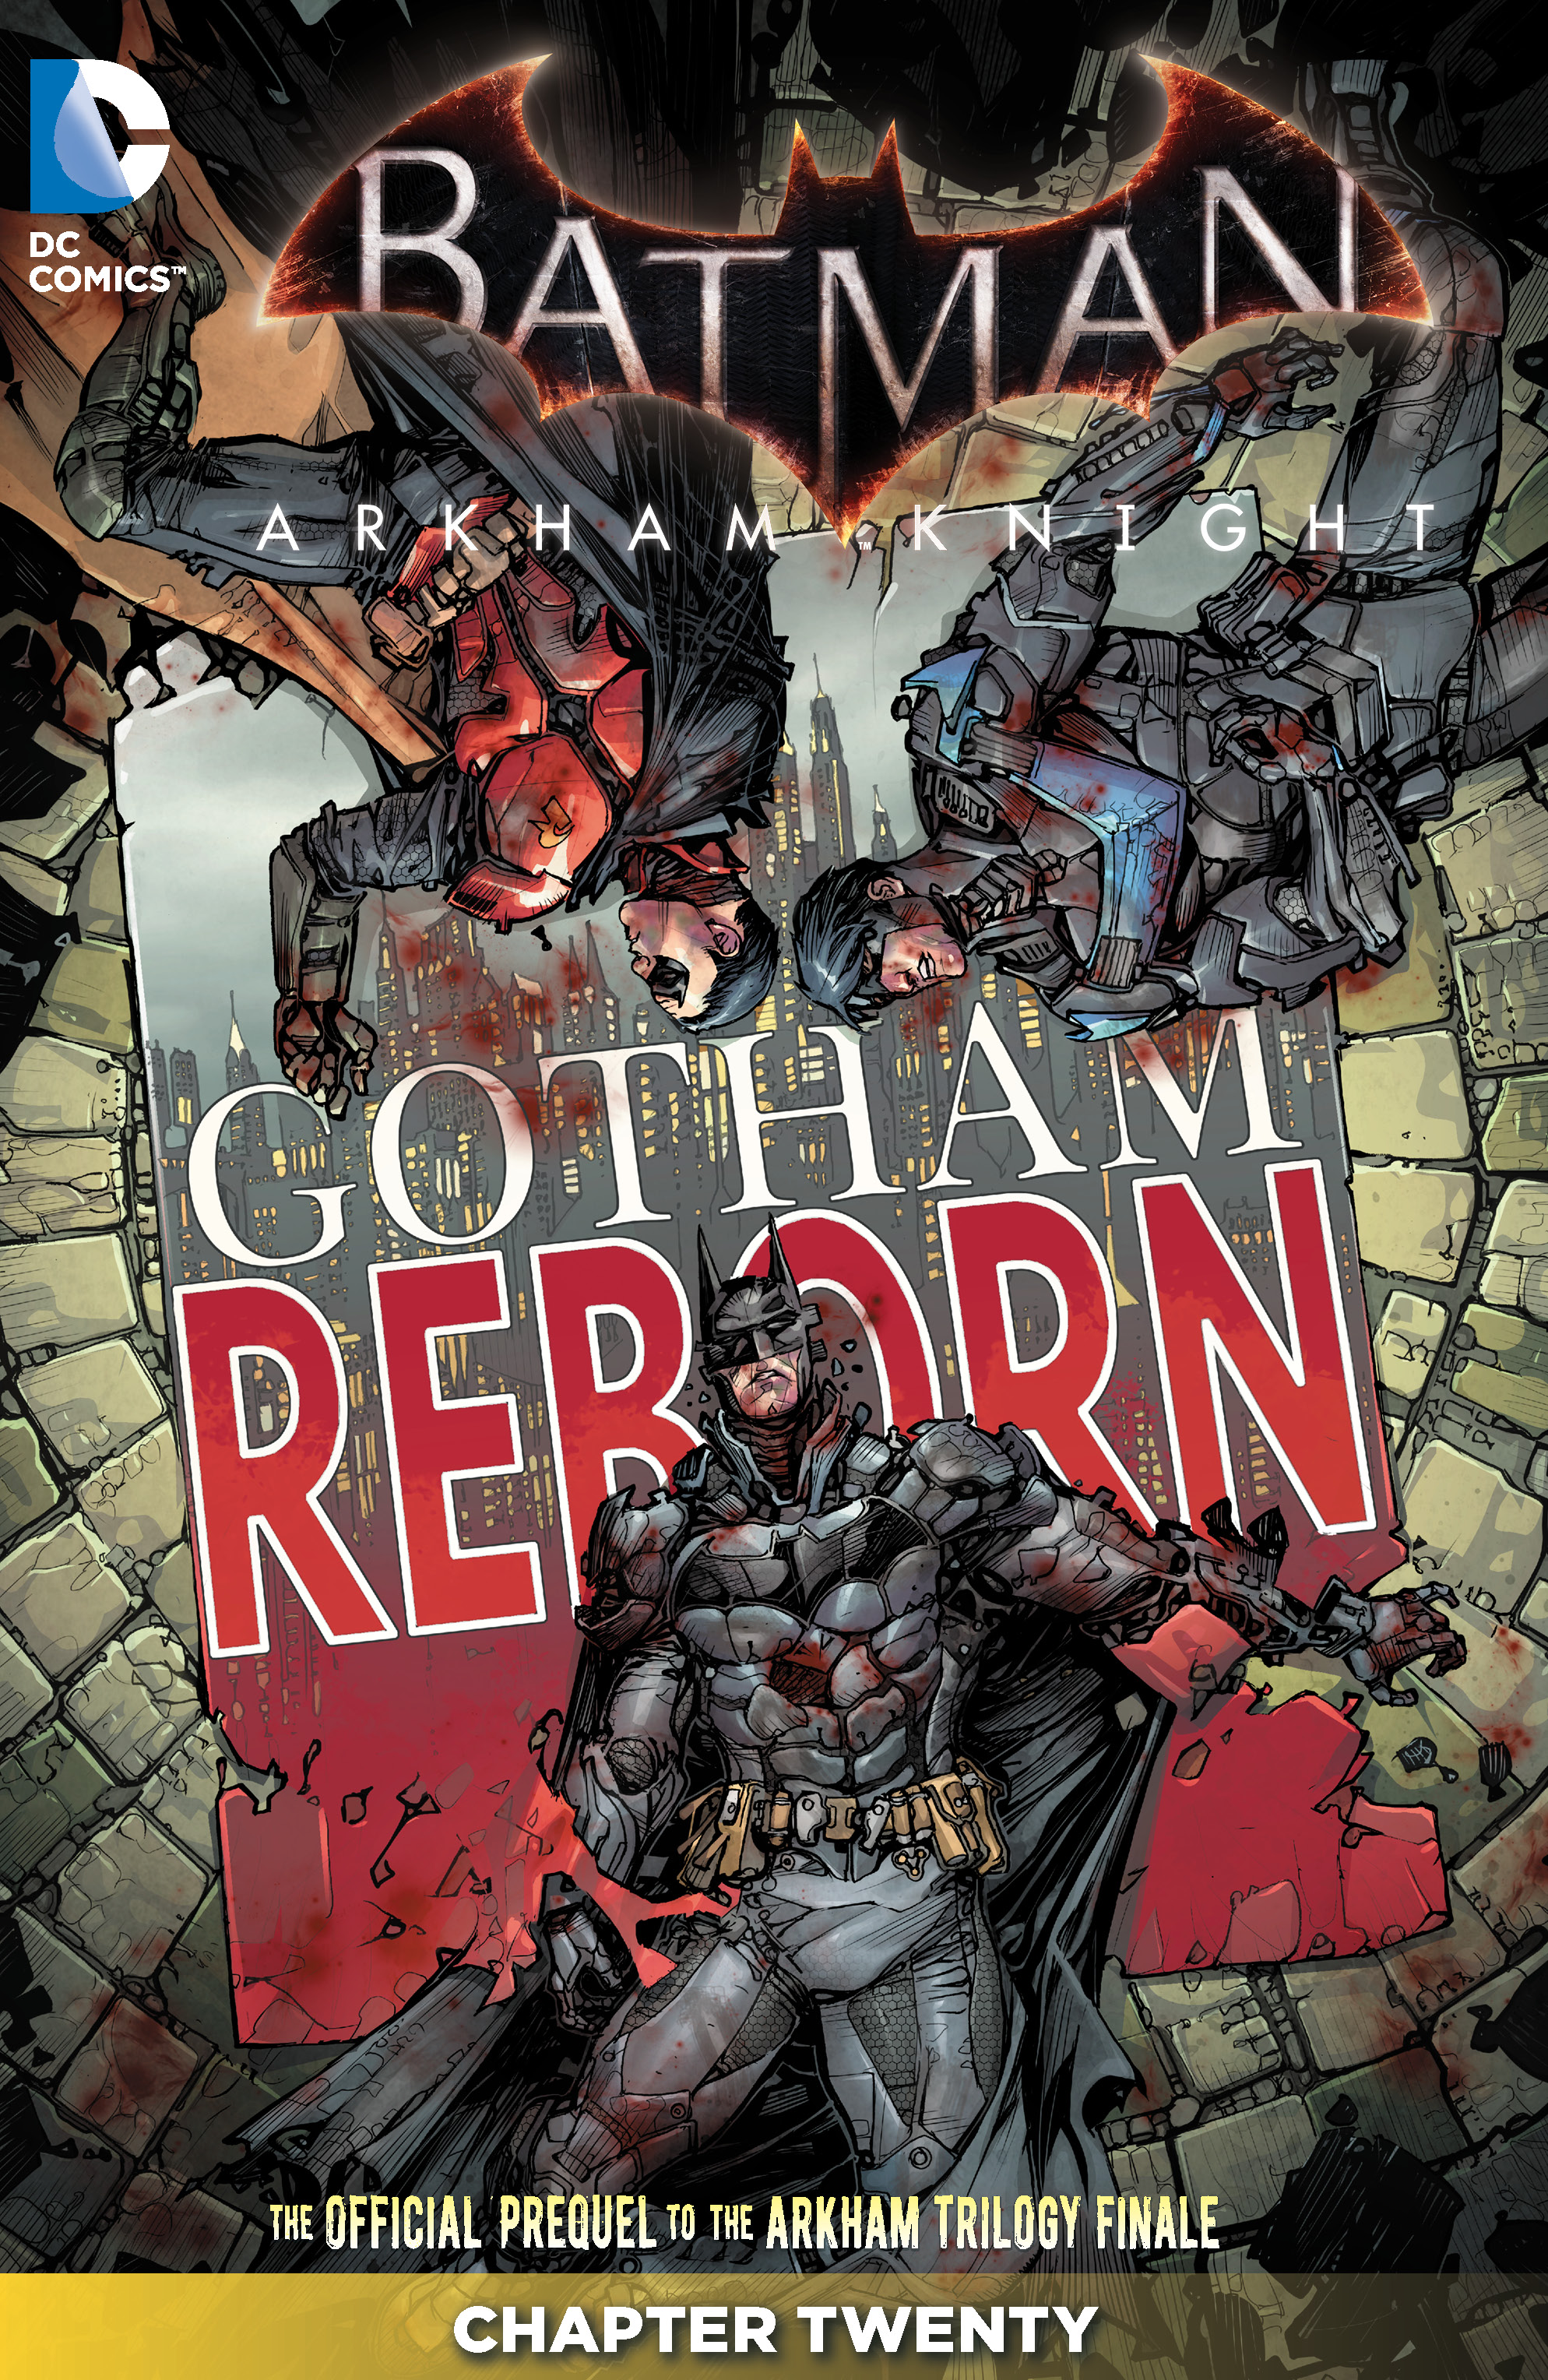 Batman: Arkham Knight #20 preview images